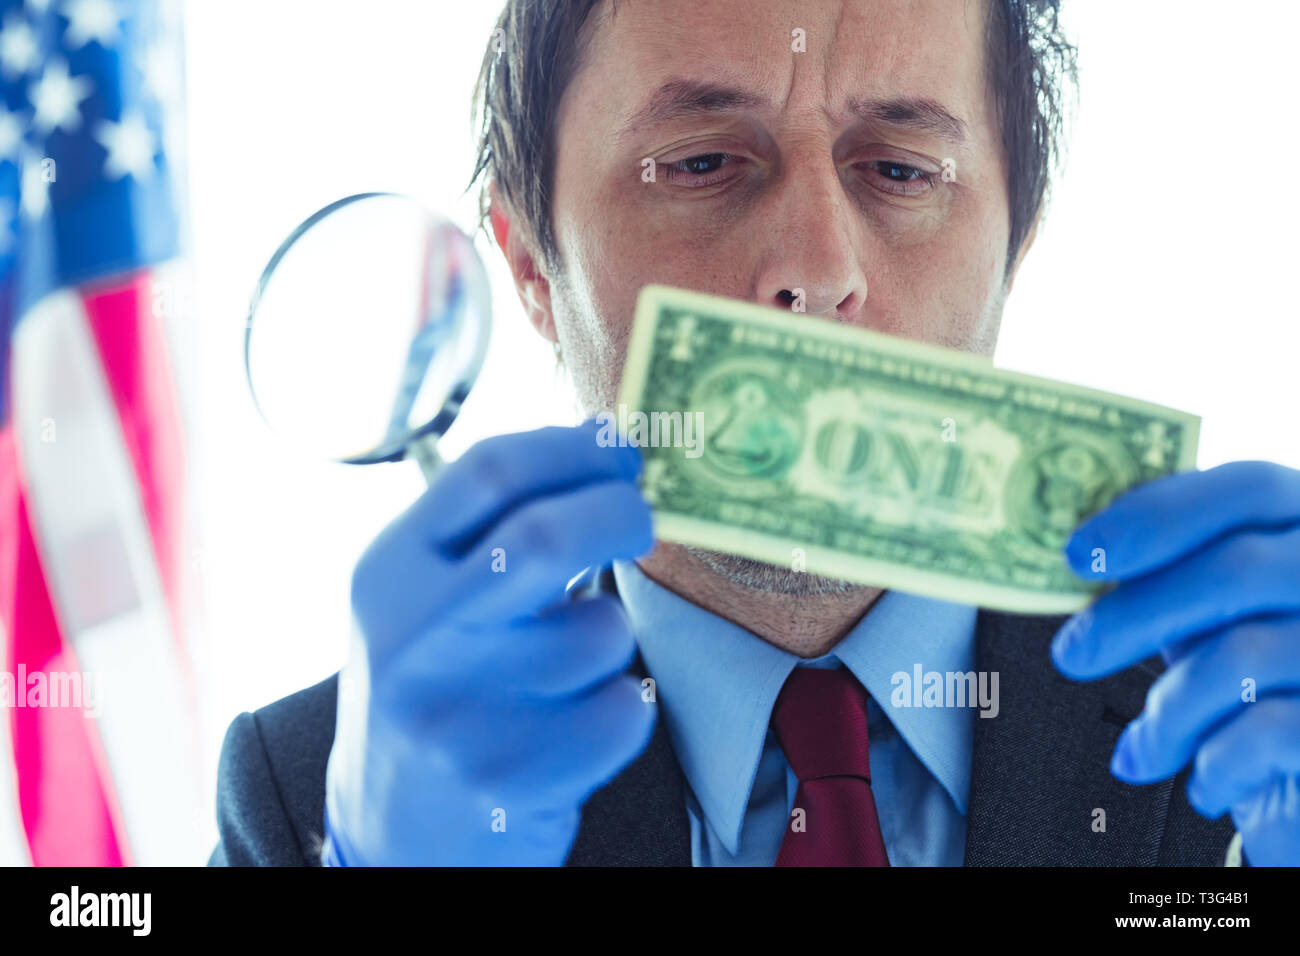 Amerikanischen Secret Service agent Analyse verdächtiger gefälschte Dollarschein, konzeptionelle Bild mit selektiven Fokus Stockfoto